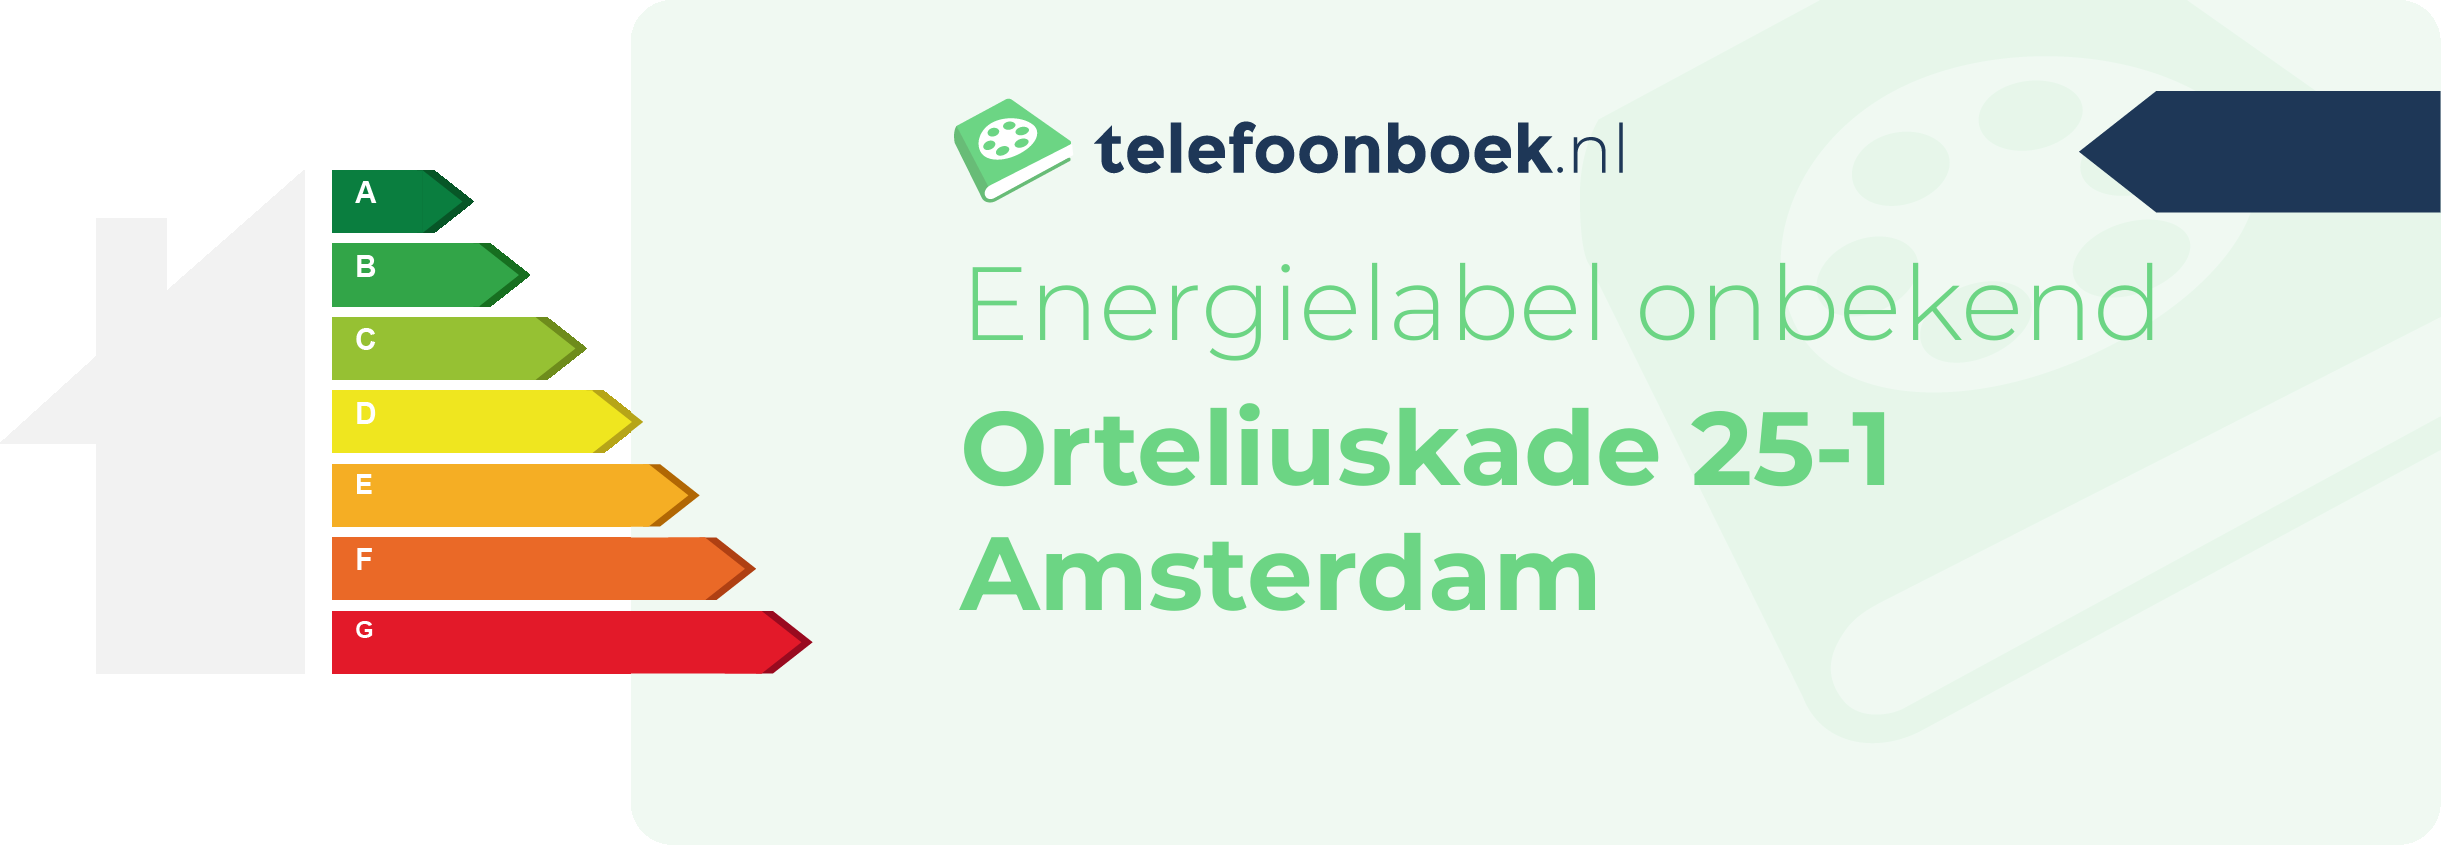 Energielabel Orteliuskade 25-1 Amsterdam